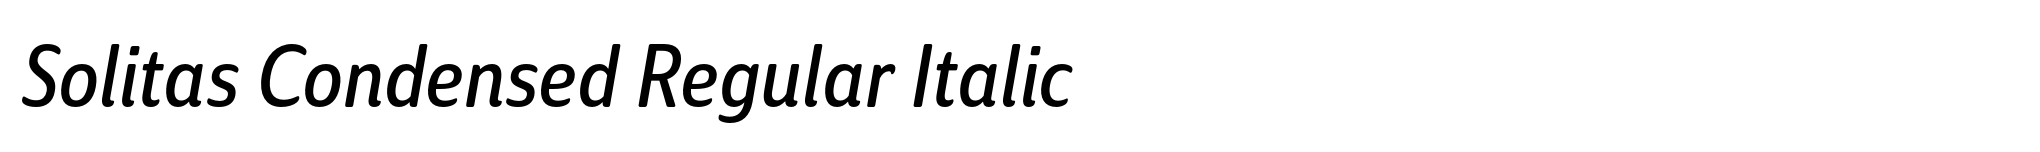 Solitas Condensed Regular Italic image